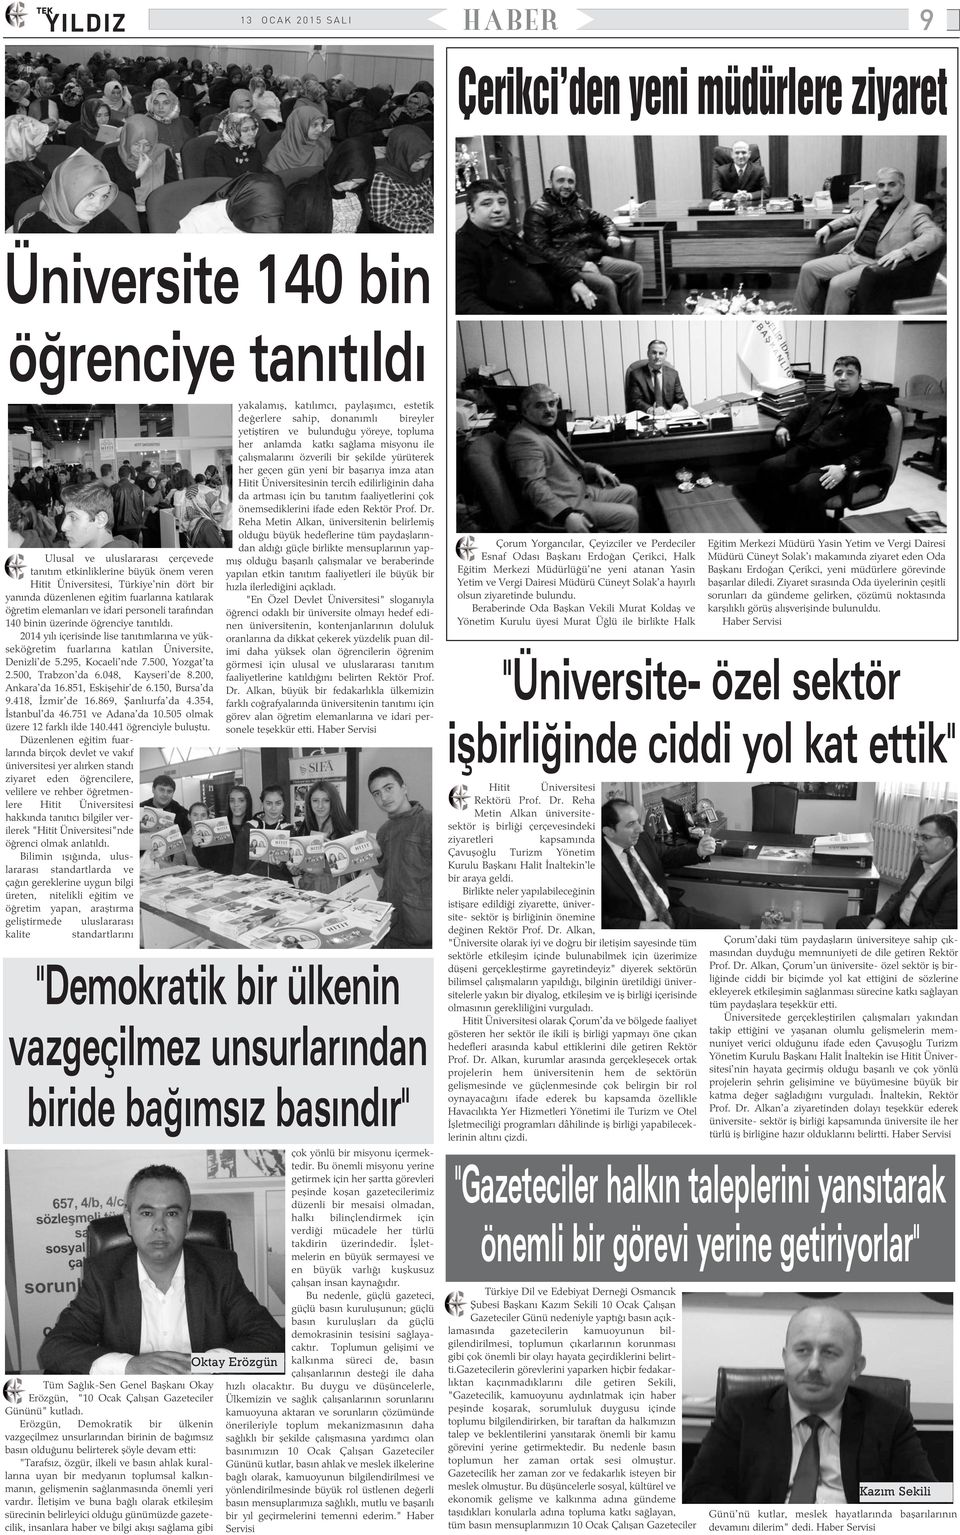 2014 yýlý içerisinde lise tanýtýmlarýna ve yükseköðretim fuarlarýna katýlan Üniversite, Denizli'de 5.295, Kocaeli'nde 7.500, Yozgat'ta 2.500, Trabzon'da 6.048, Kayseri'de 8.200, Ankara'da 16.